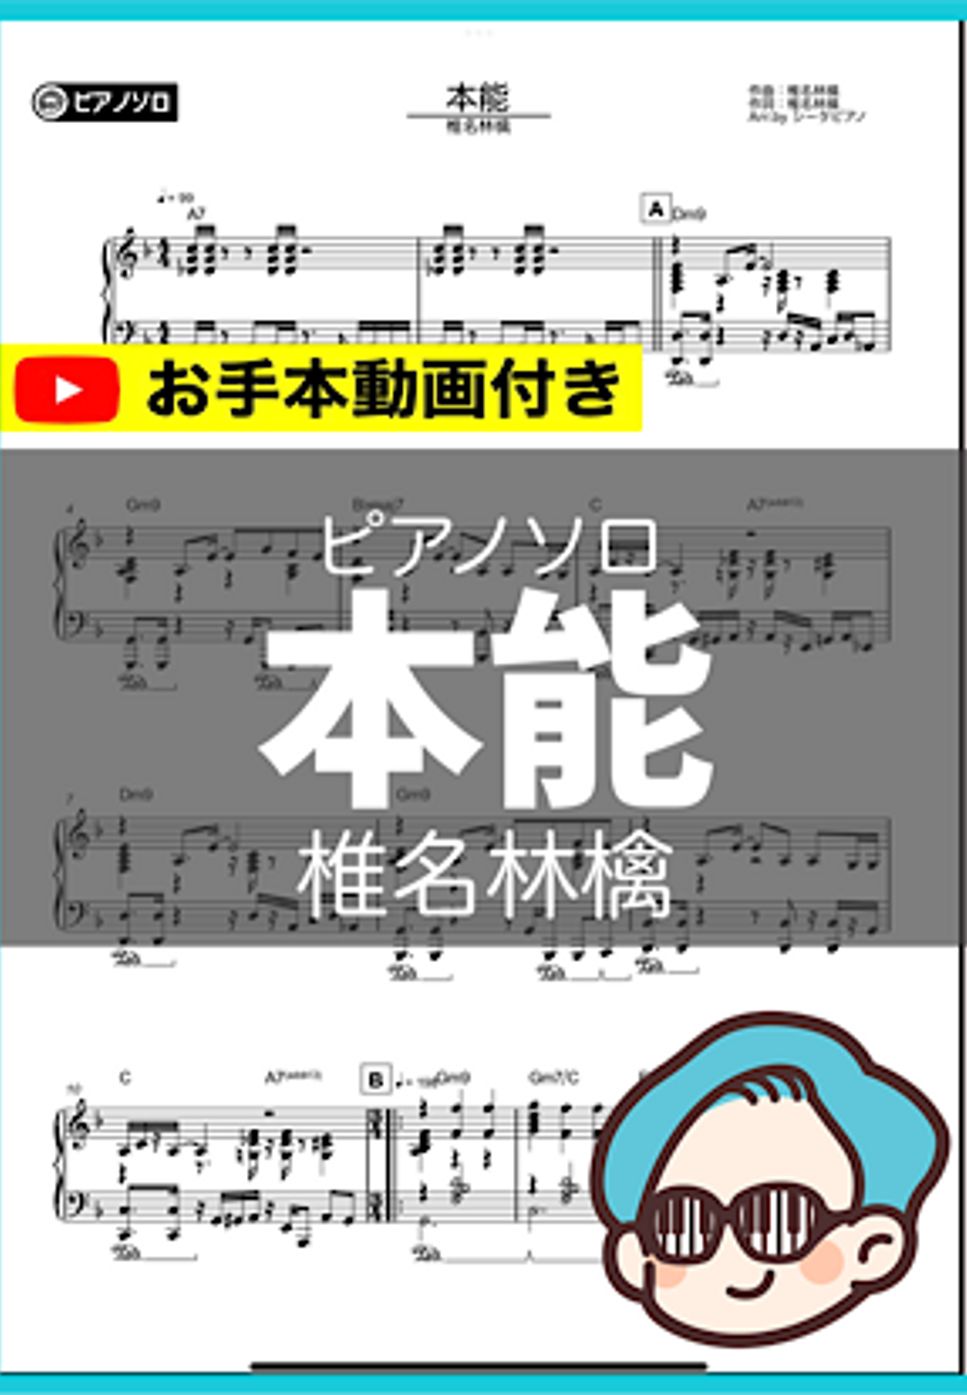 椎名林檎 - 本能 by シータピアノ